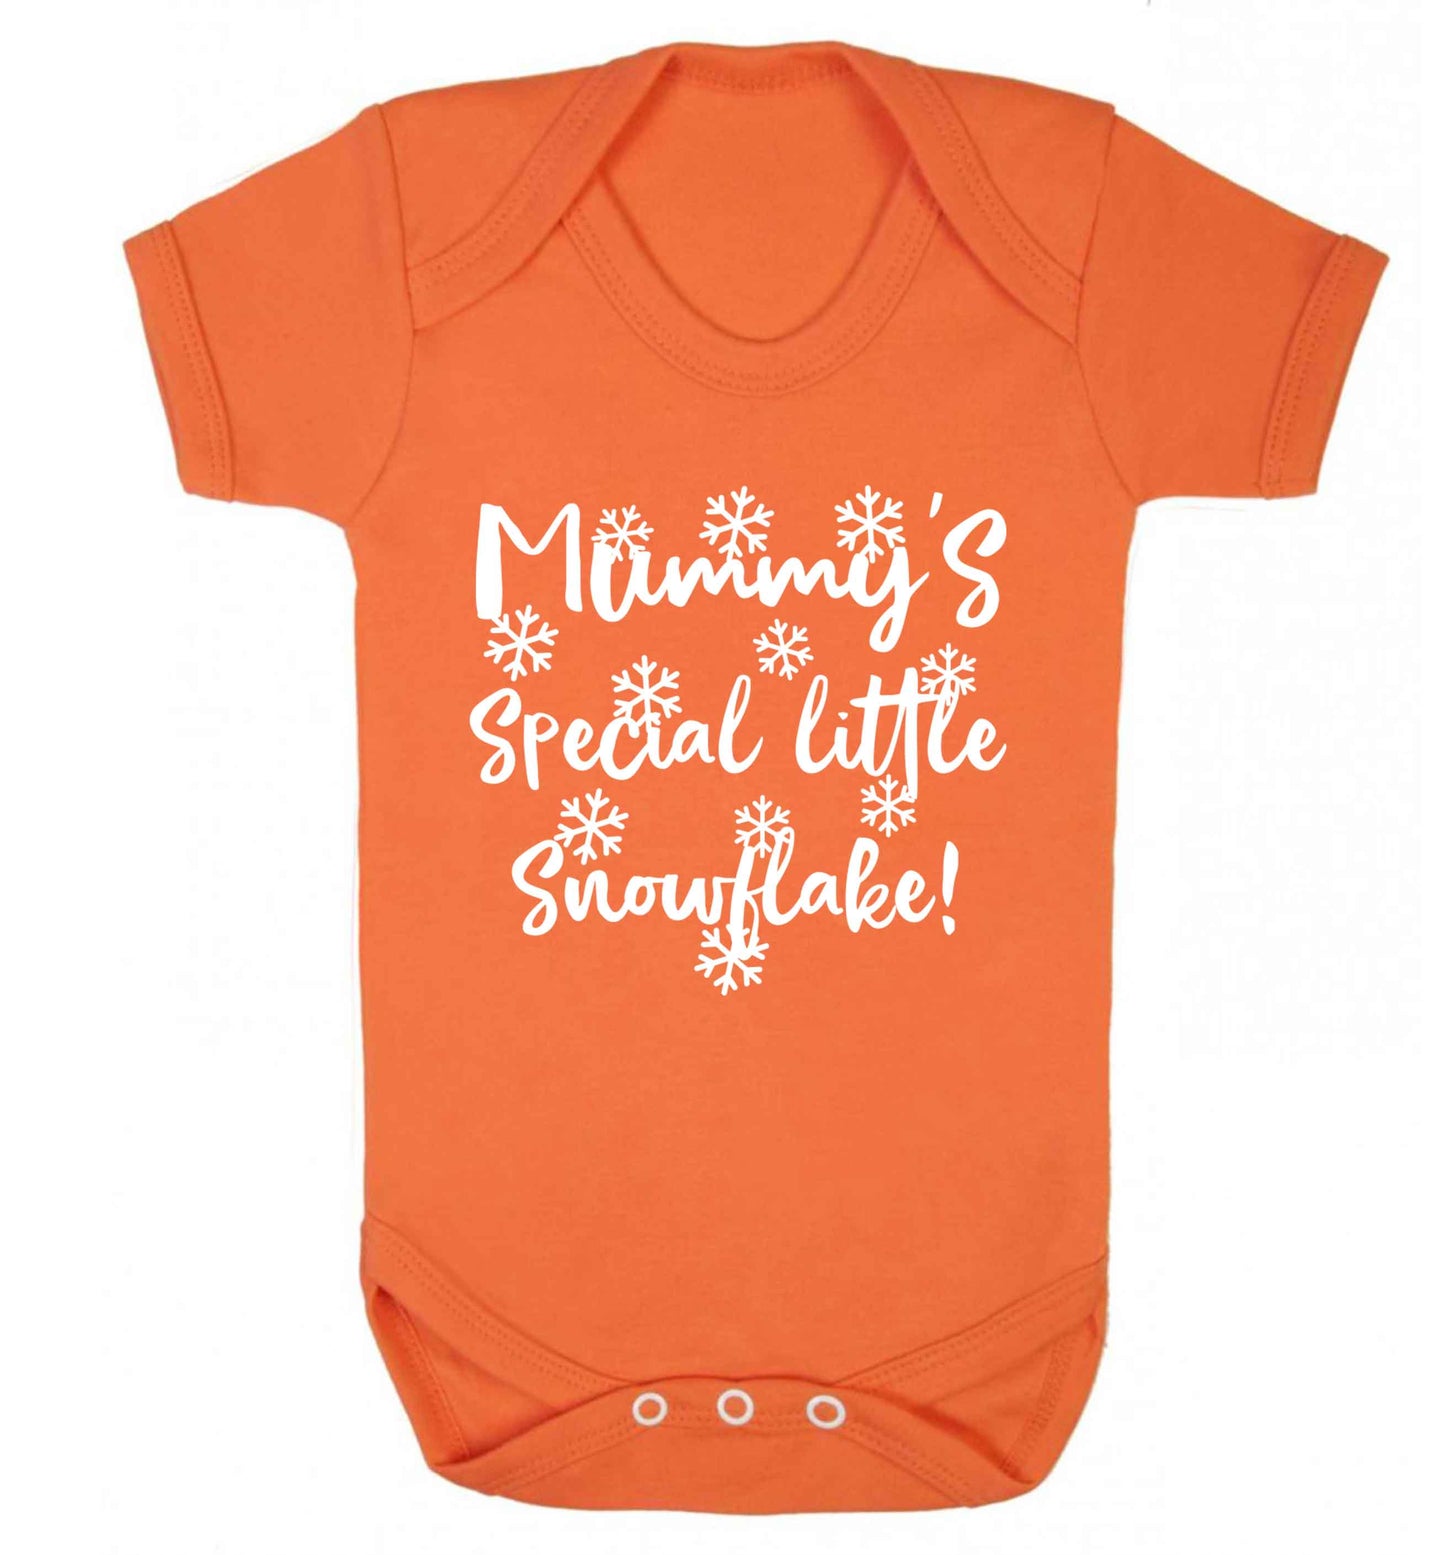 Mummy's special little snowflake Baby Vest orange 18-24 months